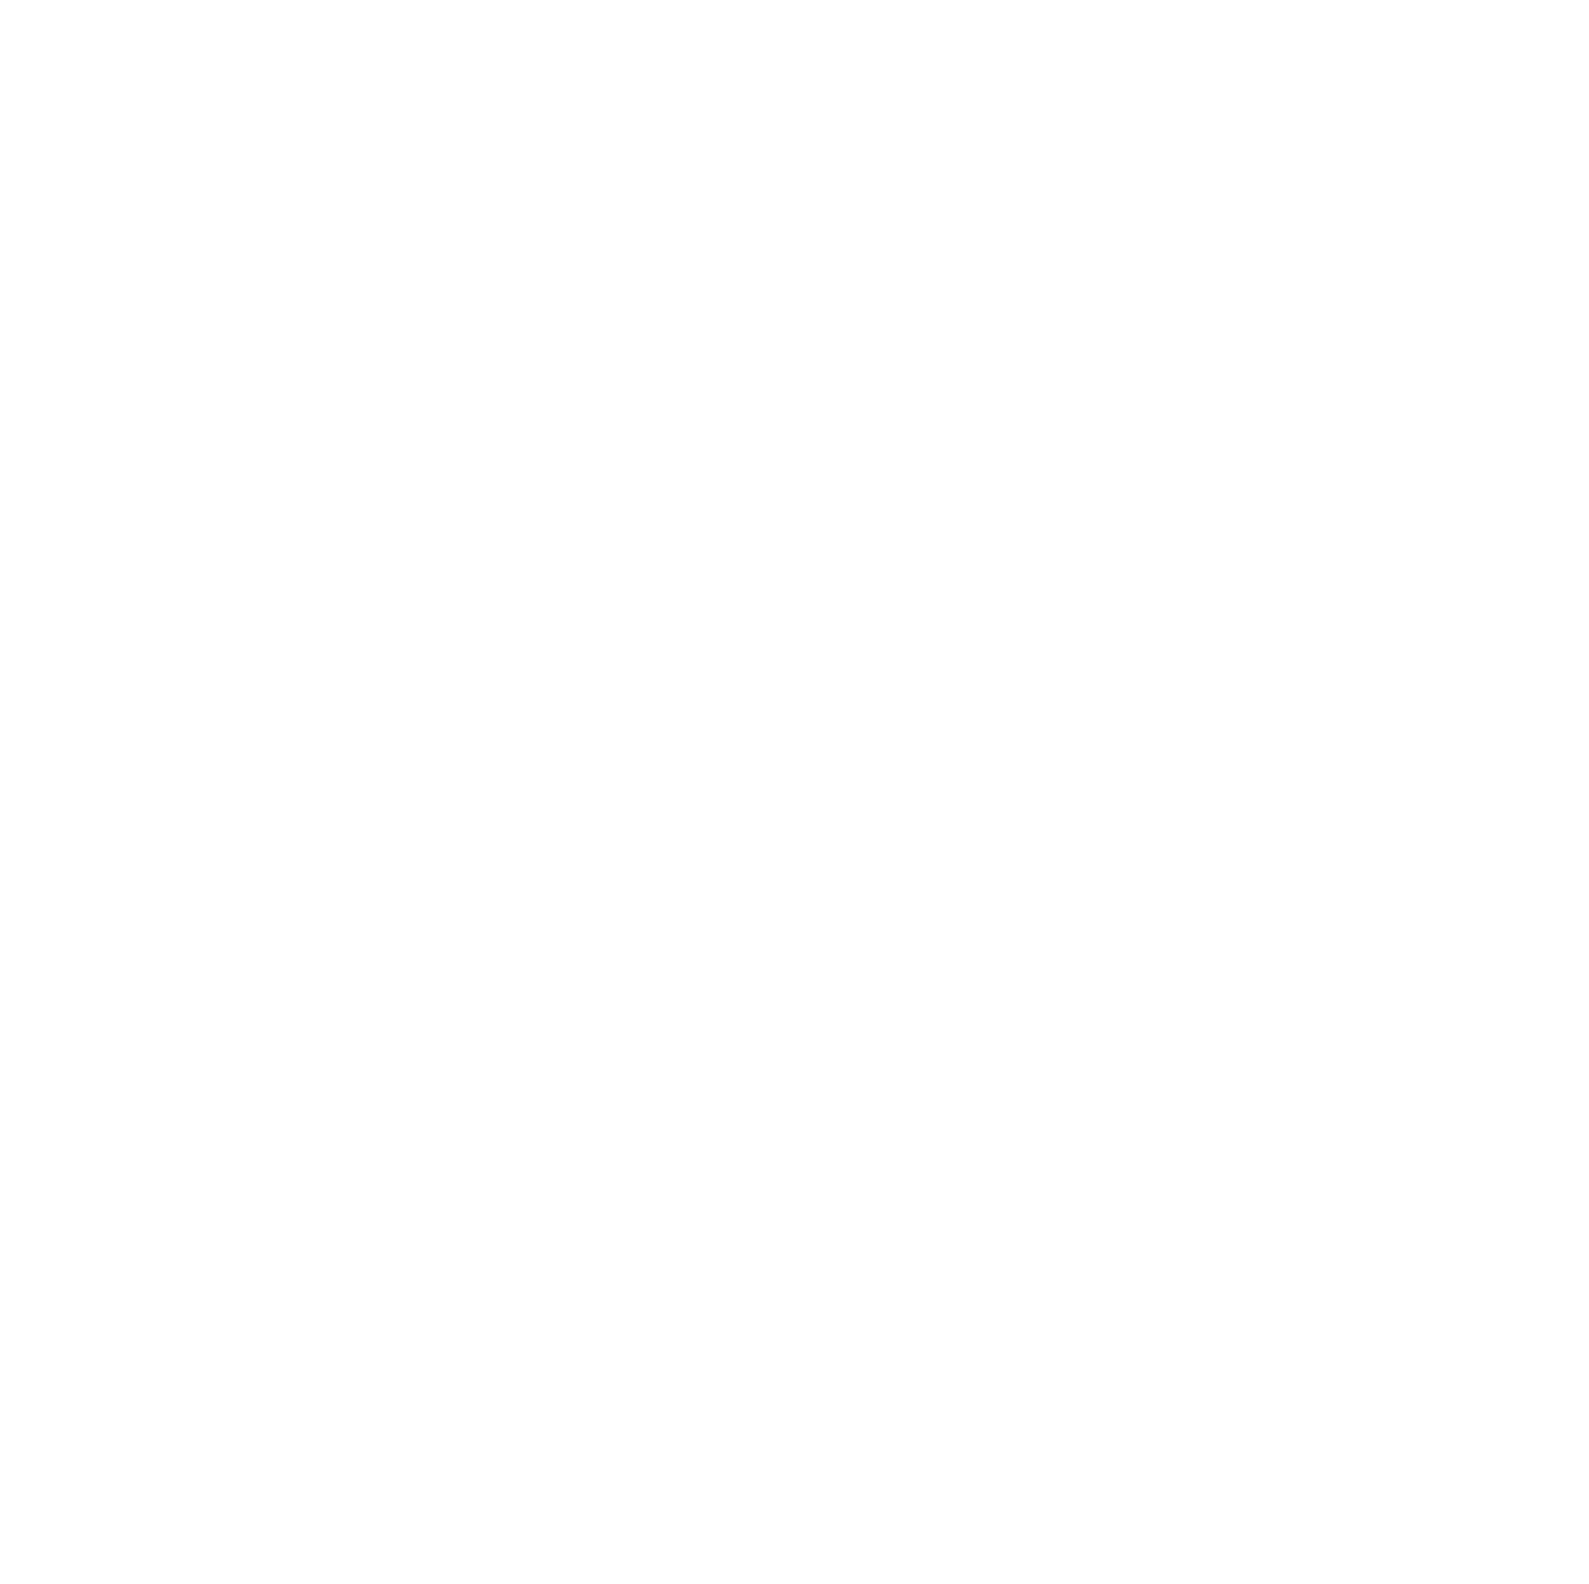 High Tide logo pour fonds sombres (PNG transparent)